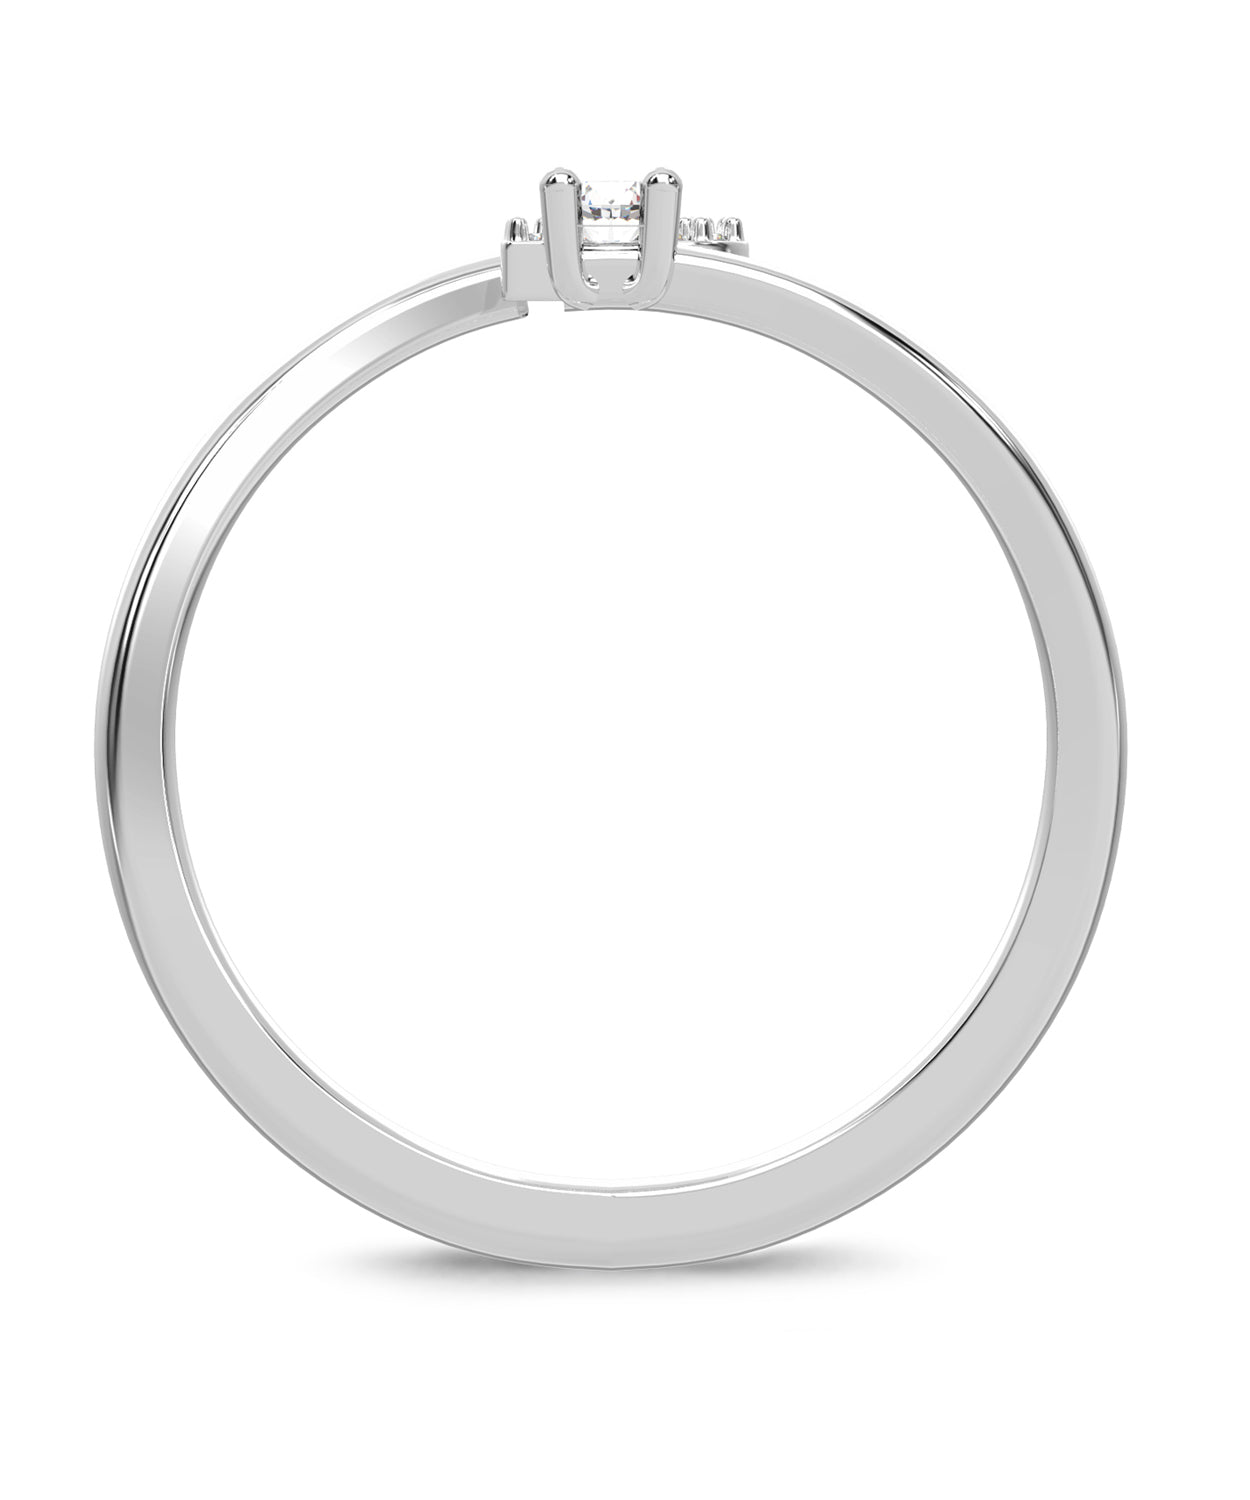 ESEMCO Diamond 18k White Gold Letter B Initial Open Ring View 2